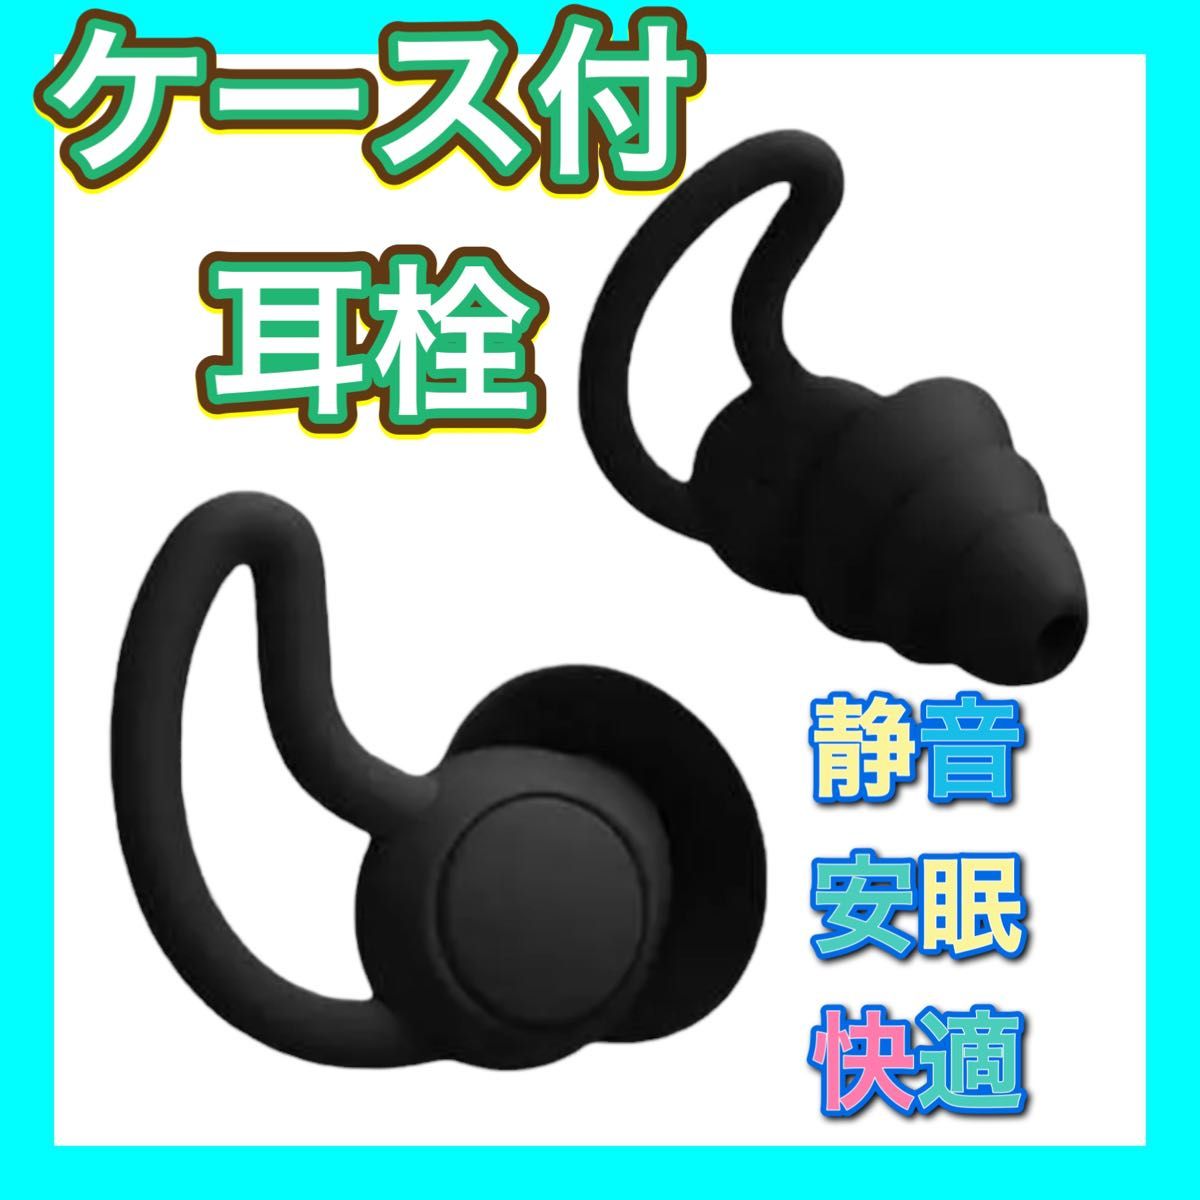 シリコン製 フィット感 耳栓 遮音 防音 黒 聴覚保護 安眠快眠 いびき シリコン ケース